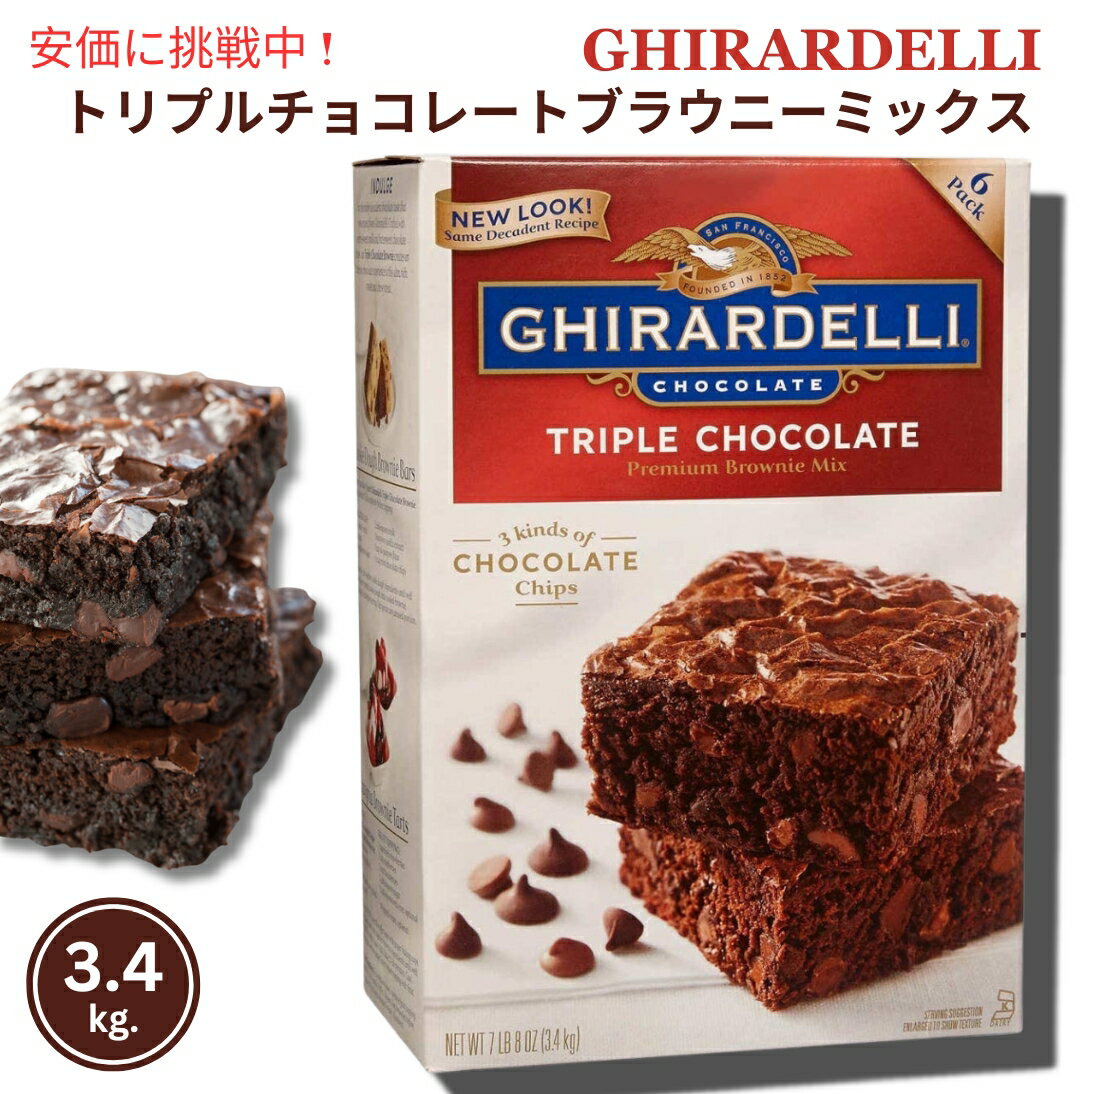 ギラデリ トリプルチョコレート ブラウニーミックス チョコチップ入り 3.4kg（6袋 x 566g）アメリカ お菓子 / Ghirardelli Triple Chocolate Brownie Mix